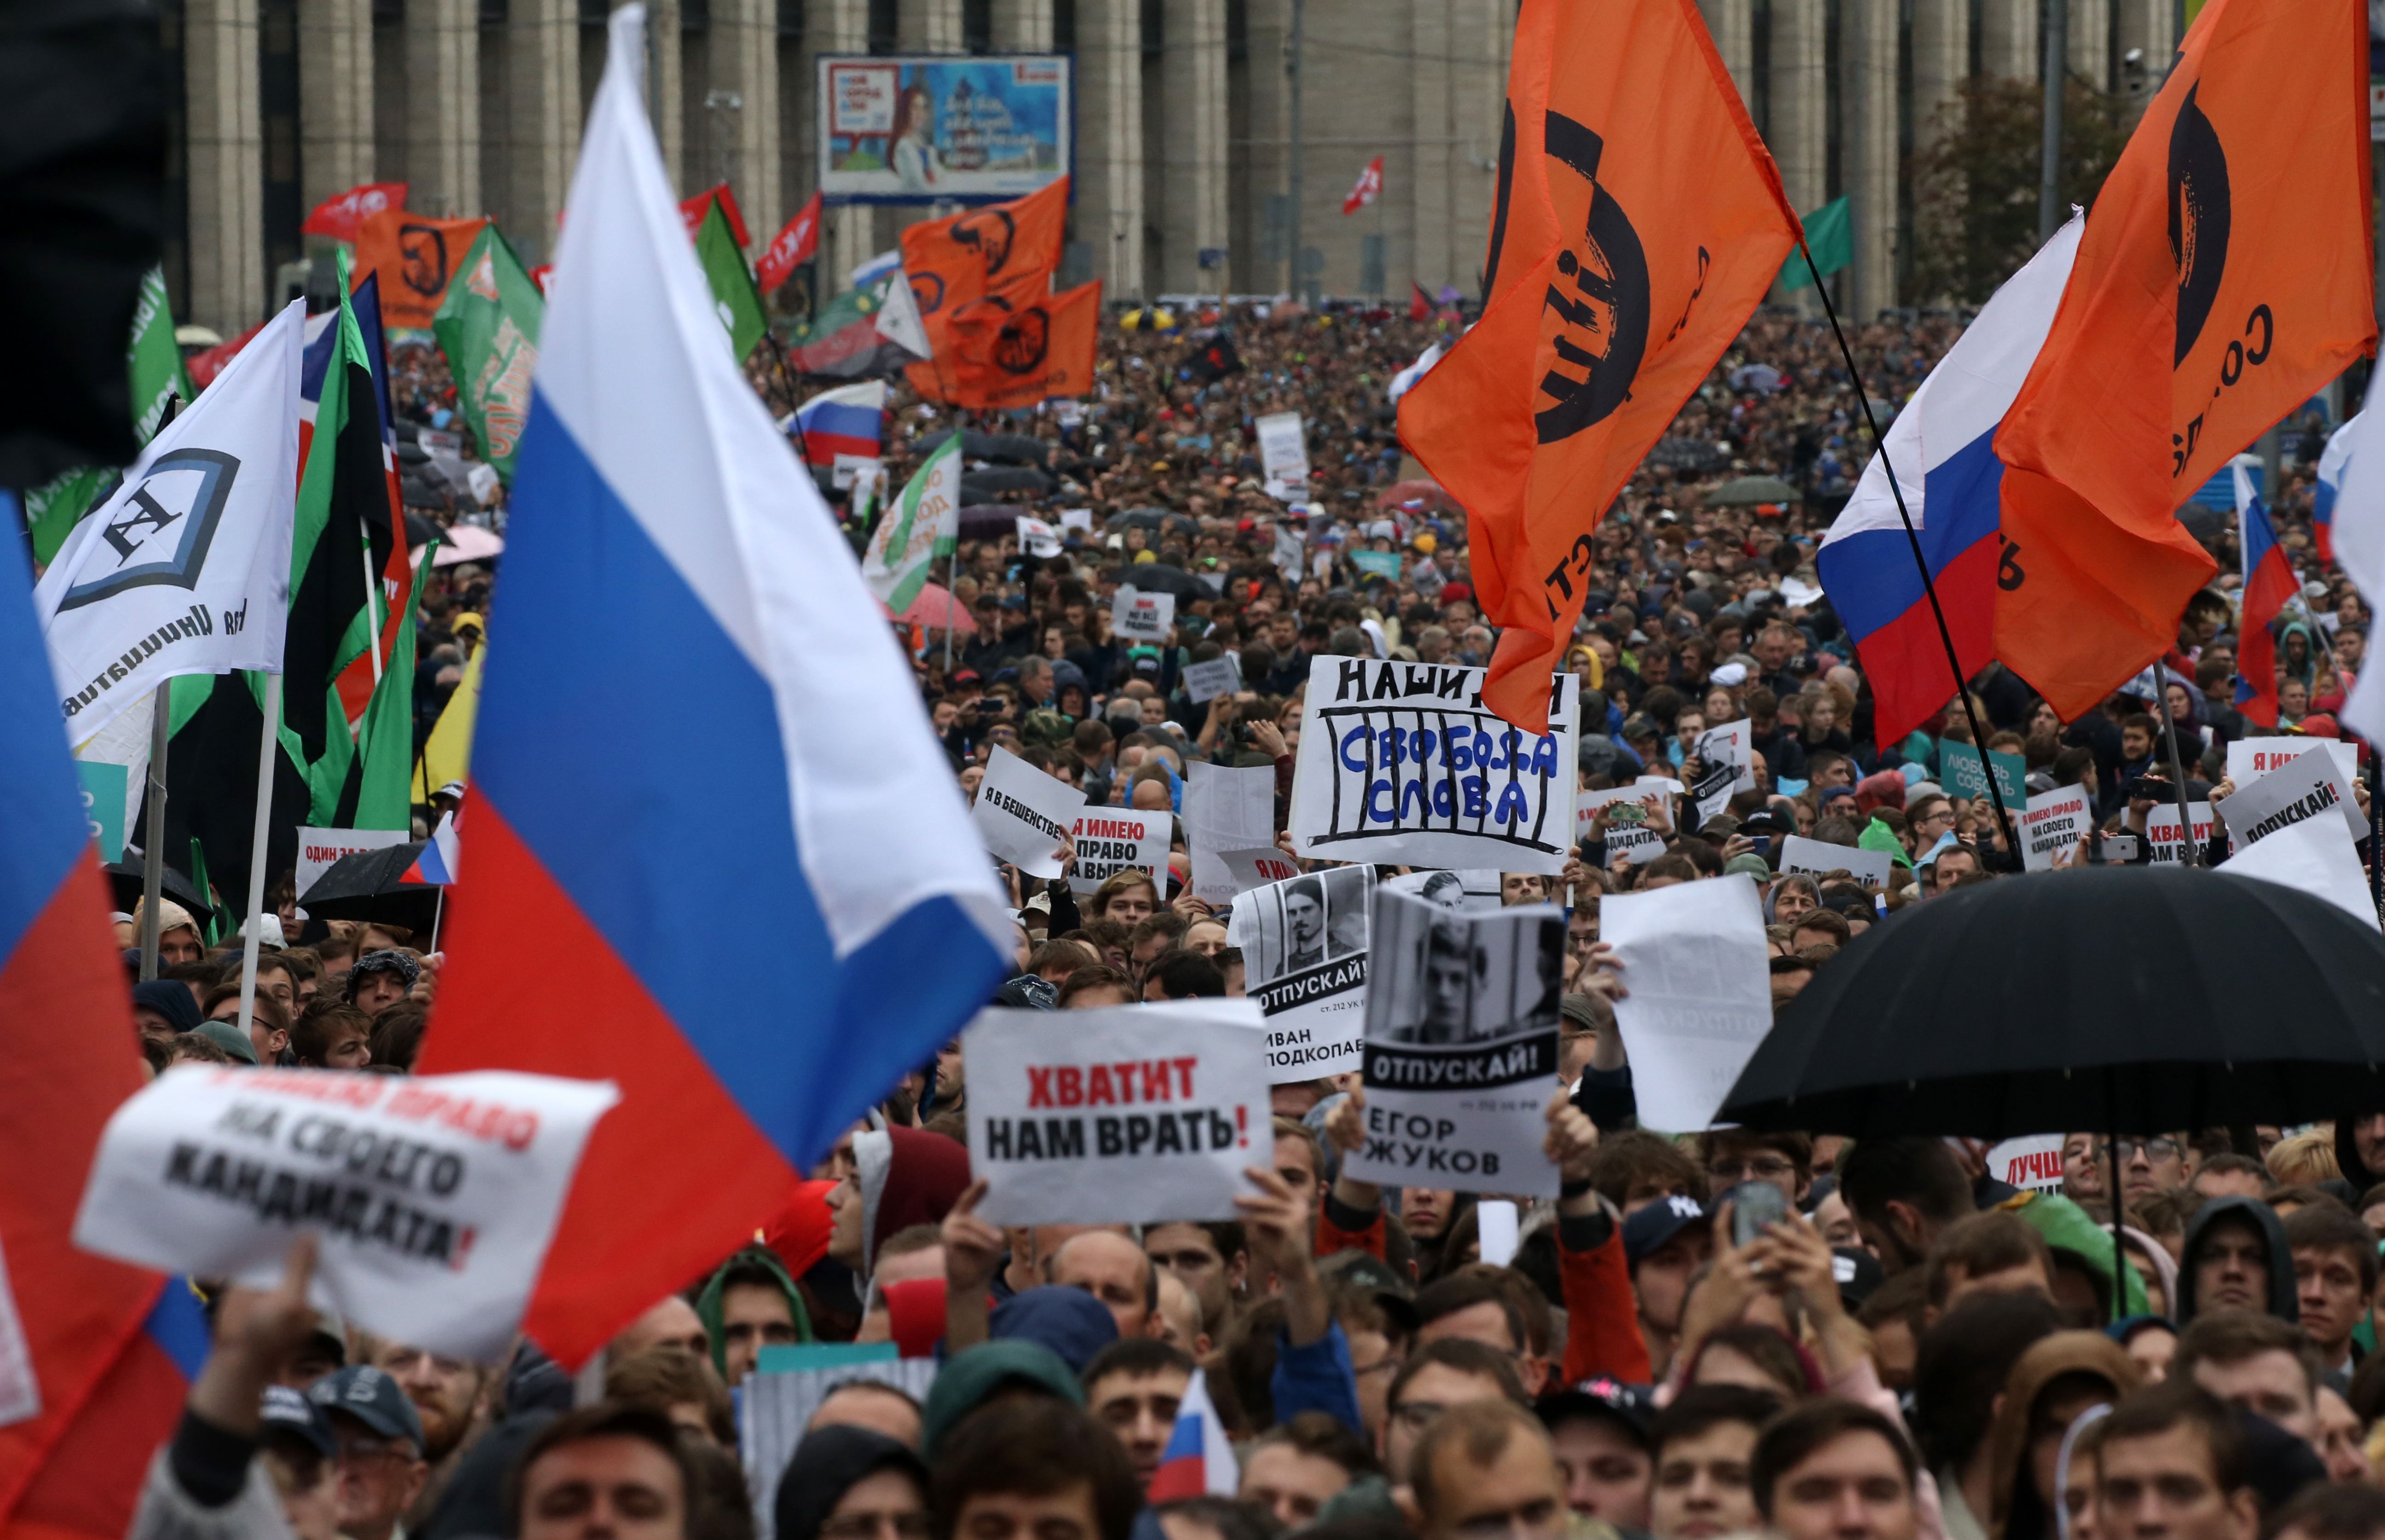 "Хватит нам врать": новая волна массовых протестов в России на фото и в цифрах